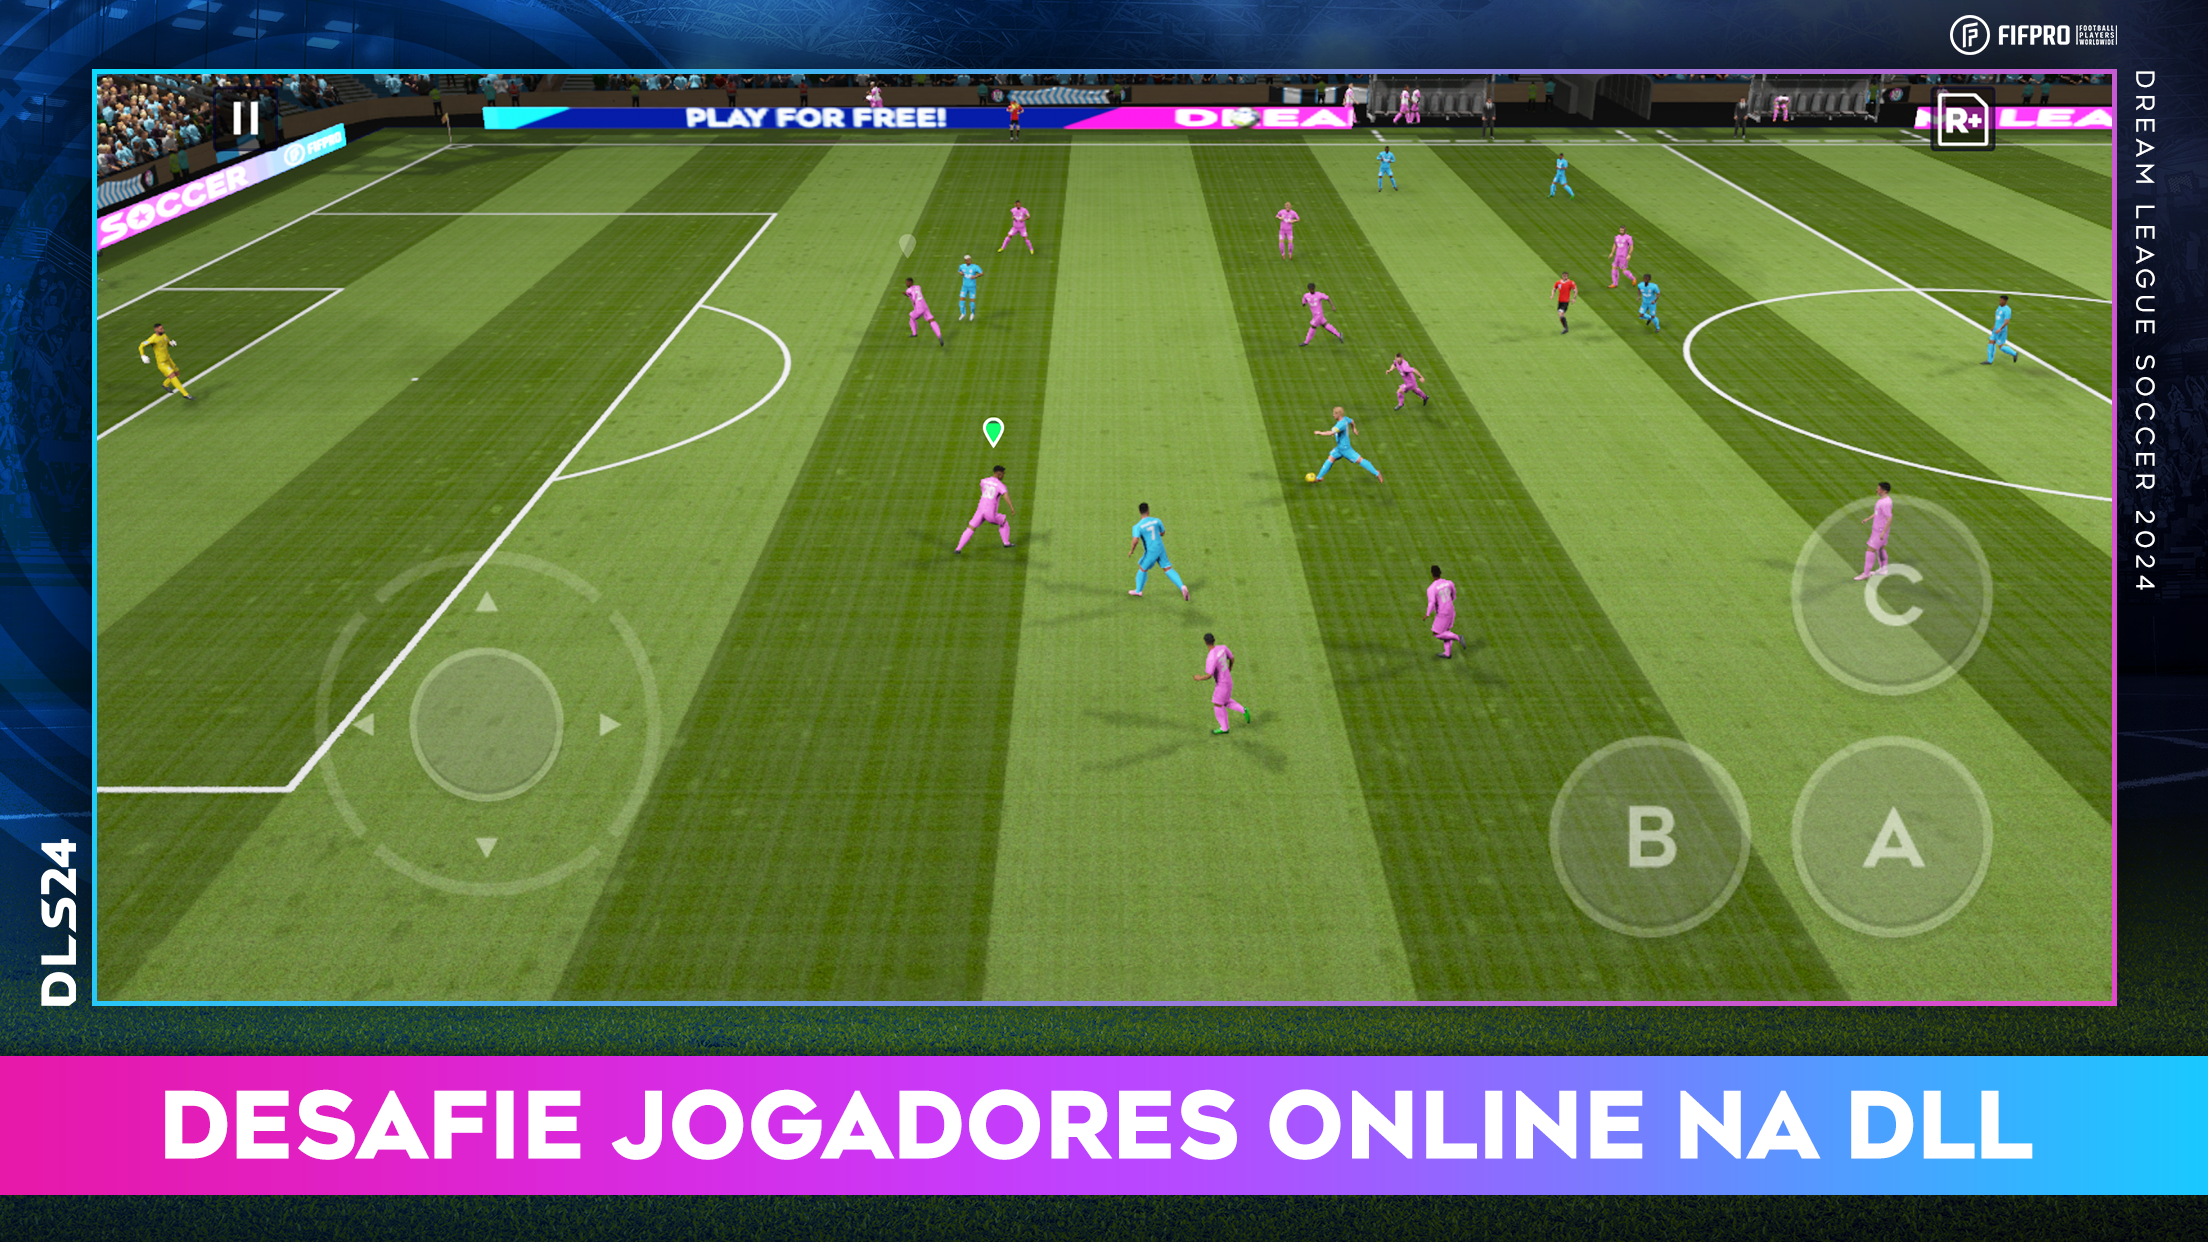 First Touch Soccer 2015 é um jogo offline de futebol para Android e iOS -  Mobile Gamer